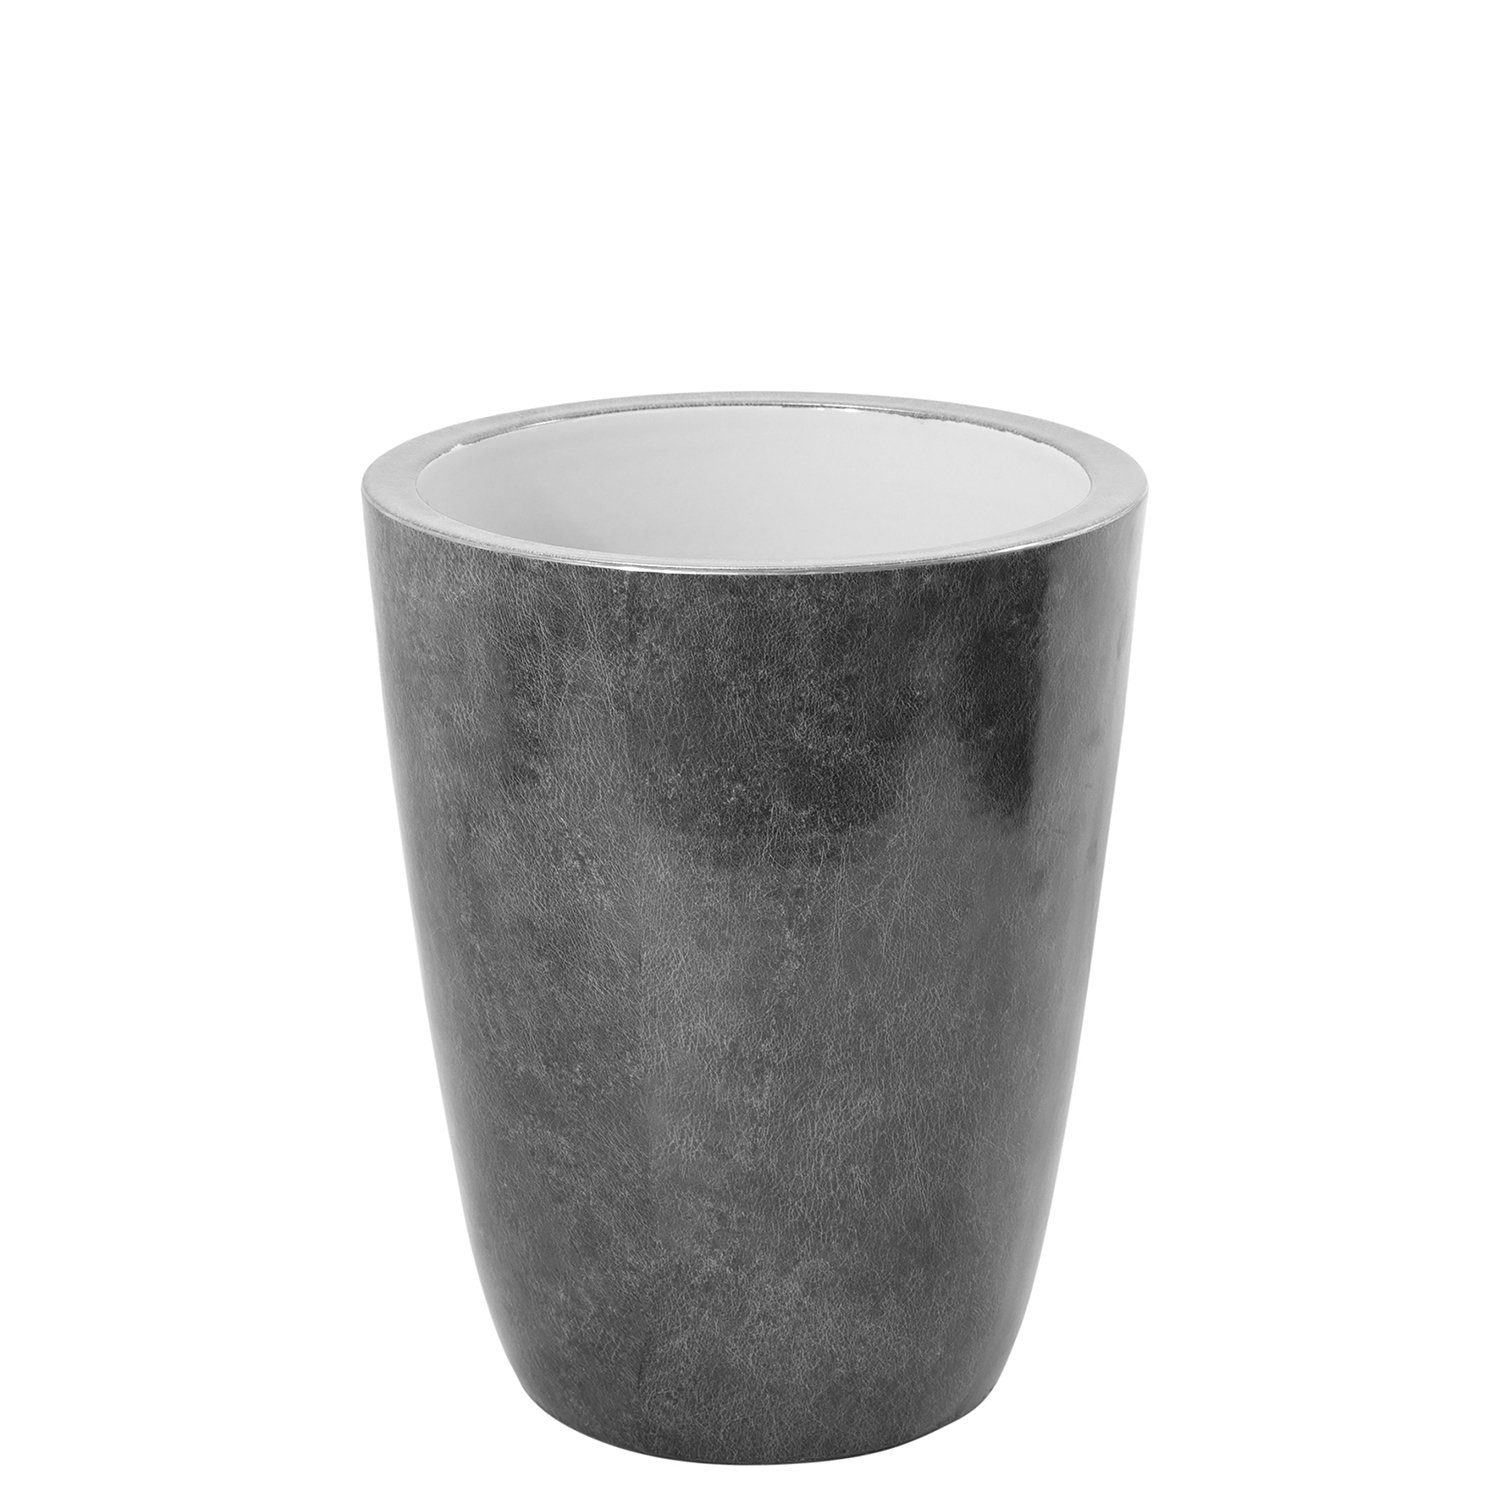 Fink Dekovase Vase MELUA - grau - Porzellan - H.37cm x Ø 29cm, Durchmesser Öffnung ca. 25cm - Fuß Durchmesser ca. 18cm